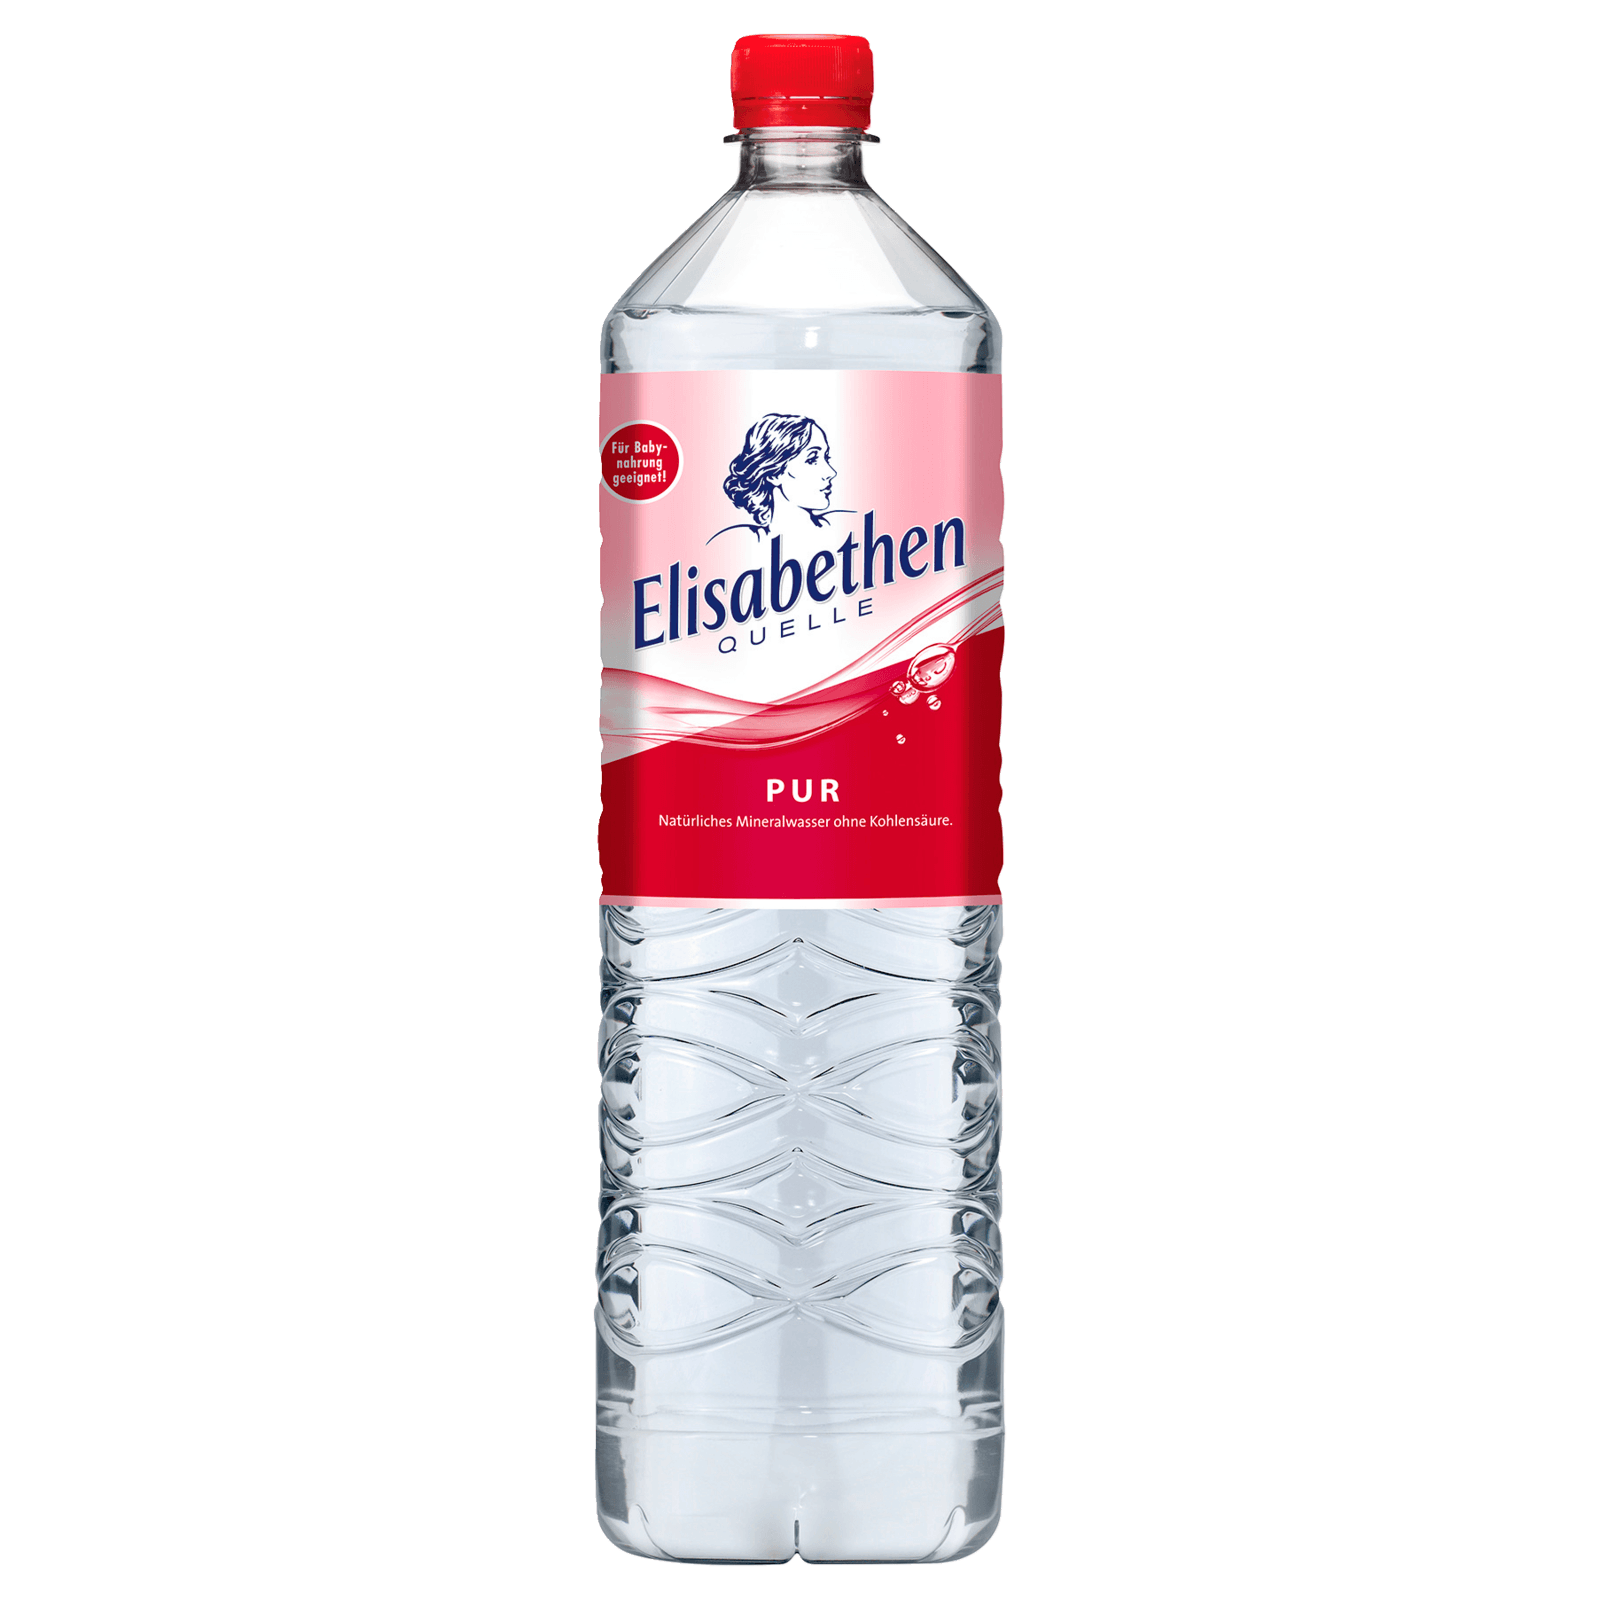 Elisabethen Quelle Mineralwasser Pur 1,5l  für 0.95 EUR